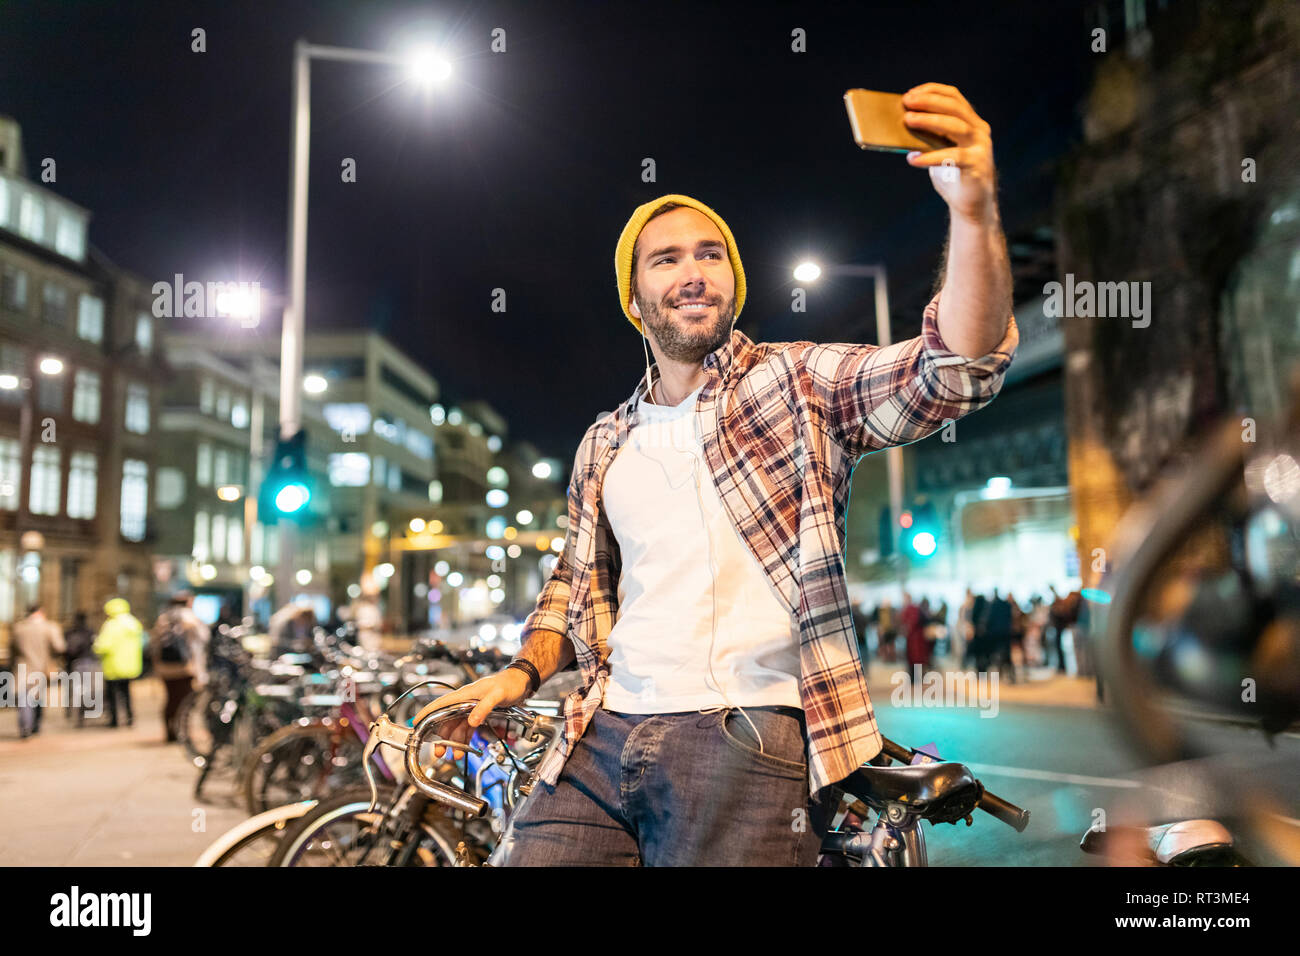 UK, Londra, uomo prendendo un selfie durante gli spostamenti di notte nella città Foto Stock